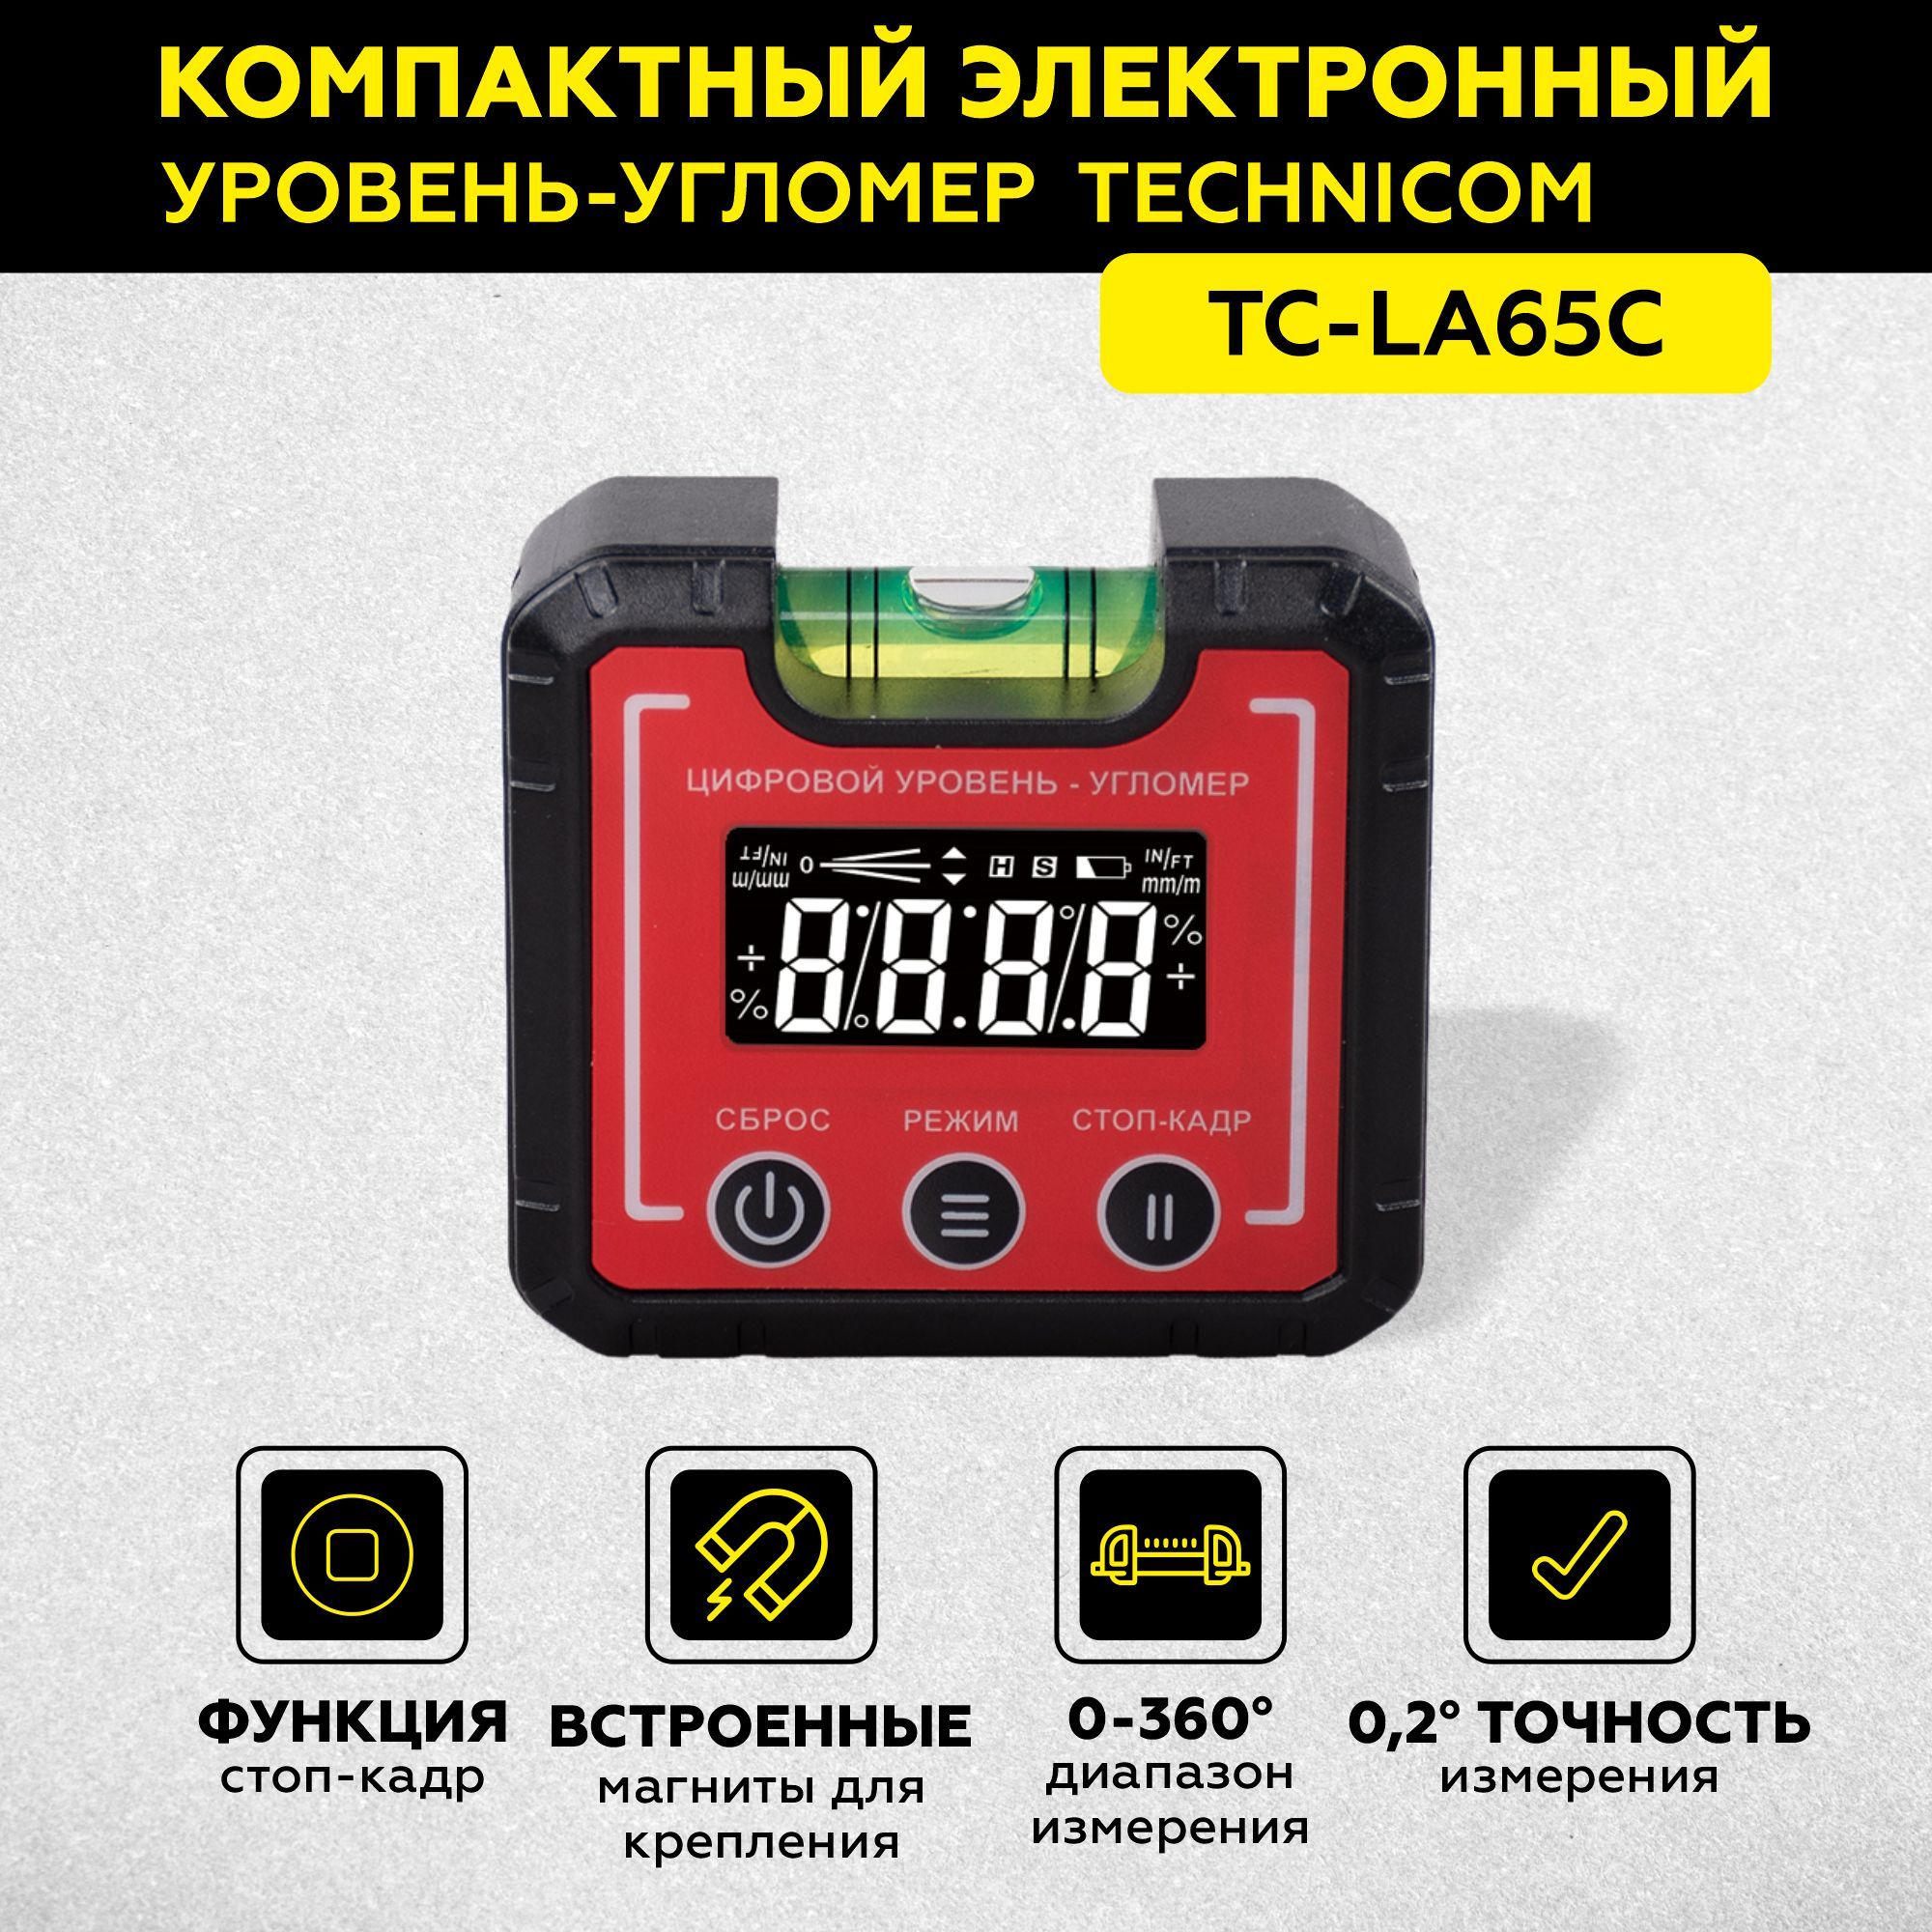 Электронный уровень-угломер с магнитом TECHNICOM 65 мм TC-LA65C электронный угломер technicom